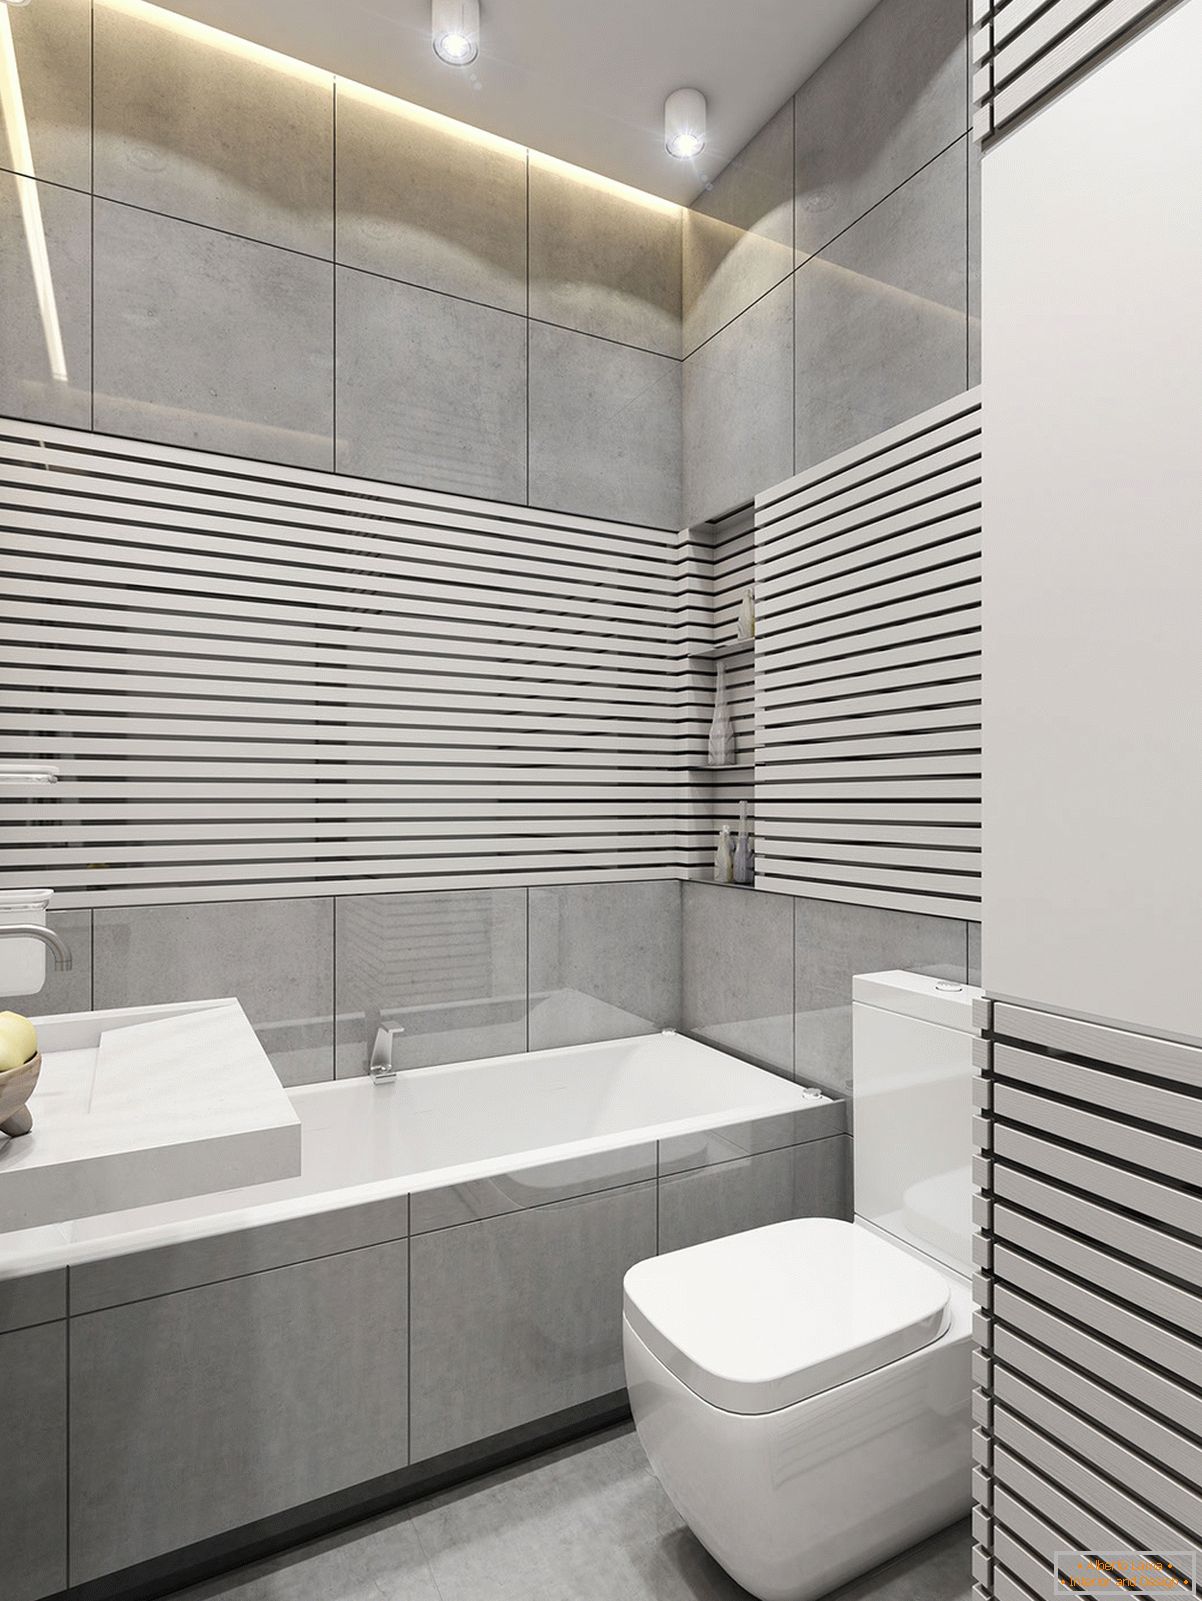 Small bathroom in gray color